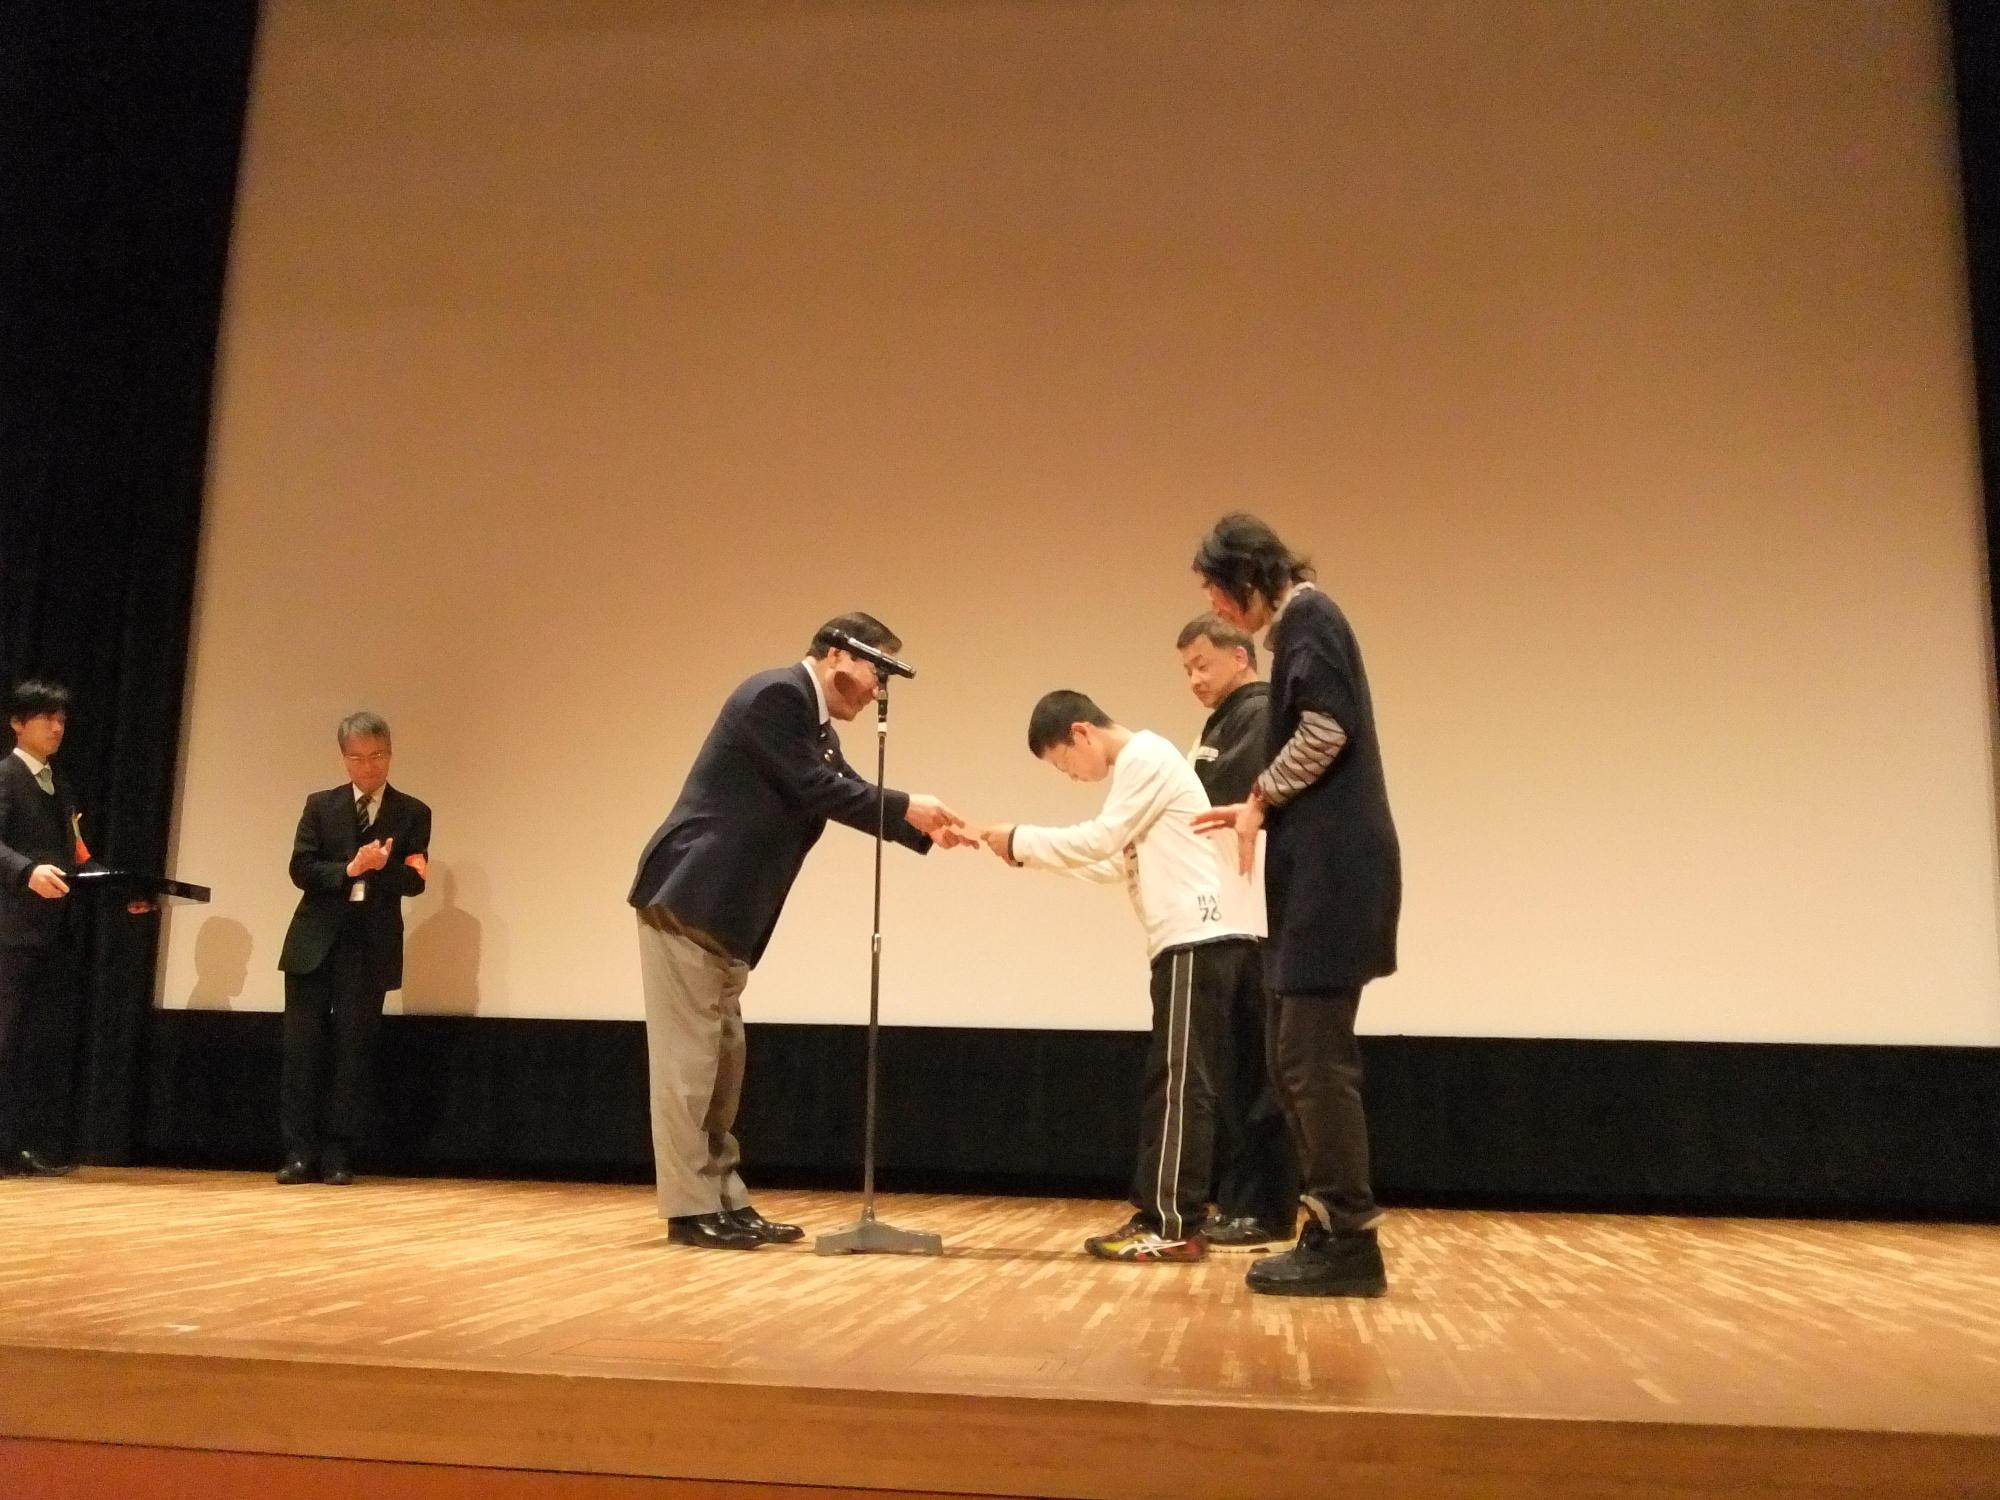 舞台上で男性から表彰状を受け取る、グループ3人組の写真